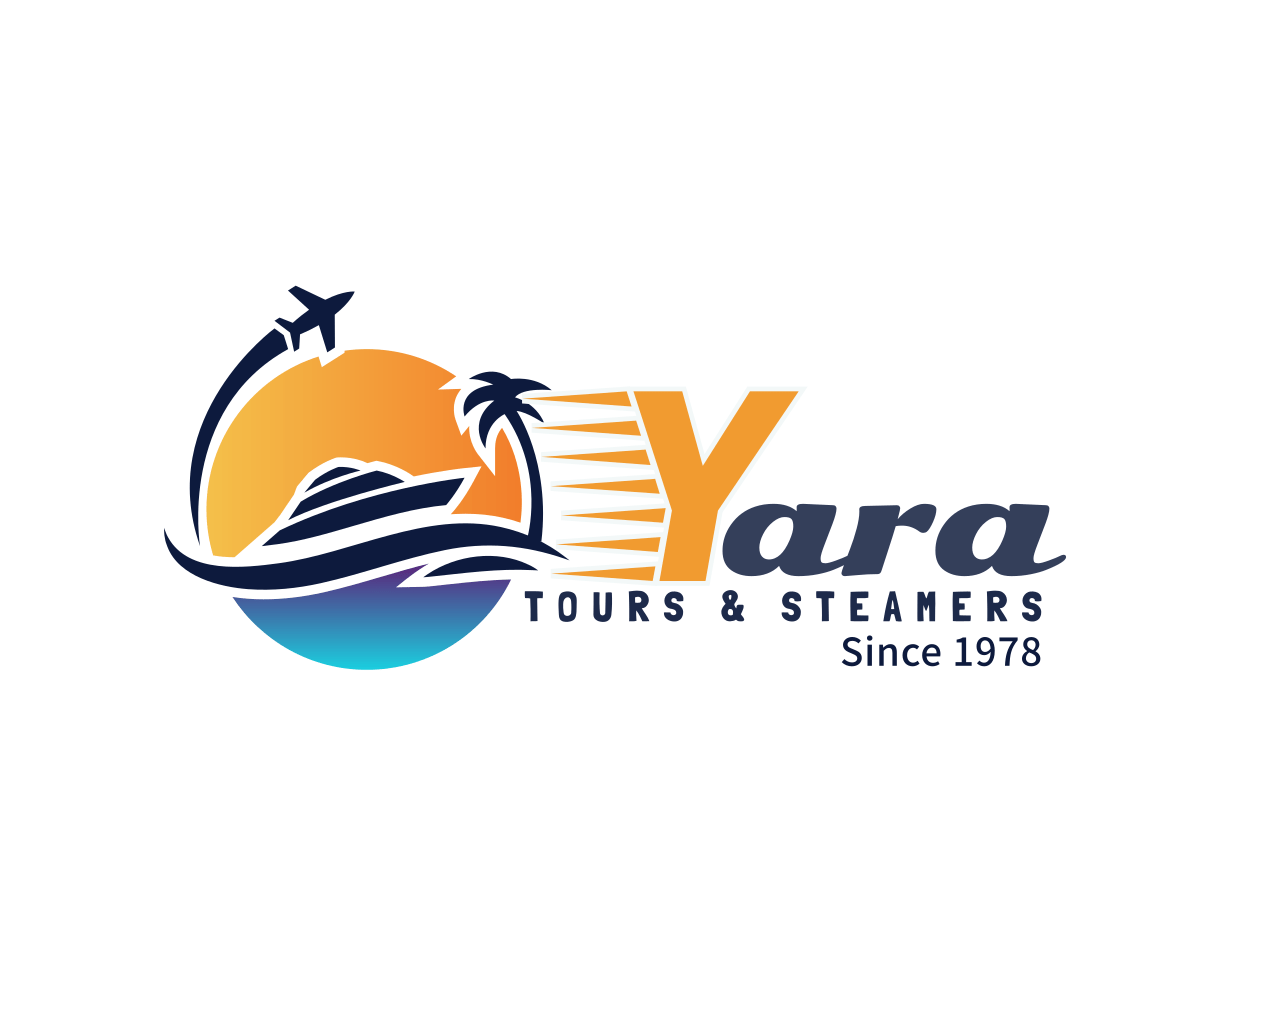 شركة يارا للسياحة والبواخر Yara Tours & Steamer Co.